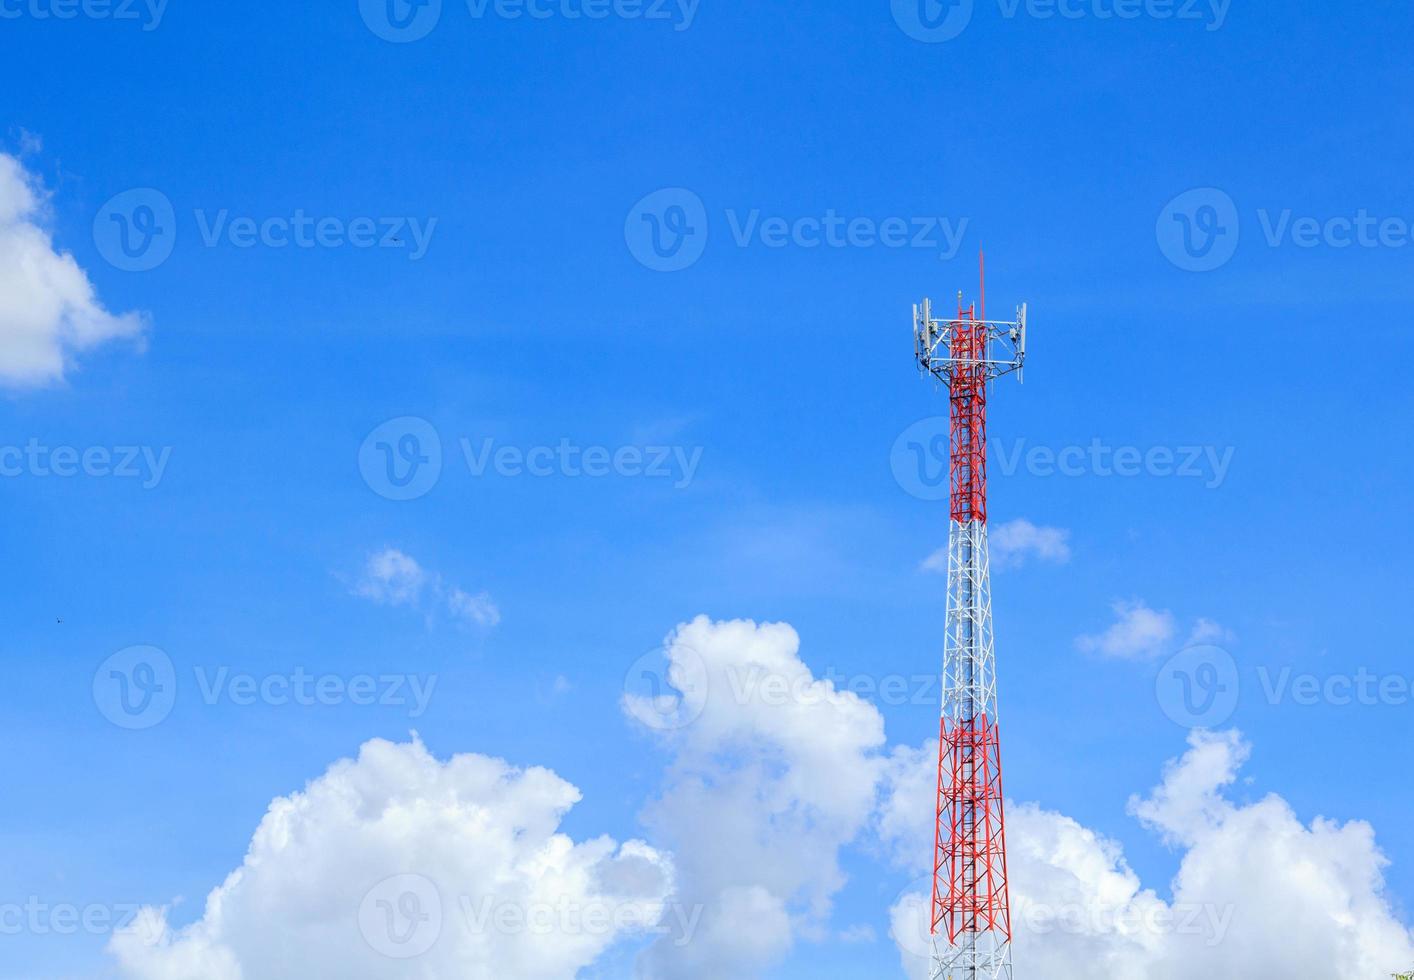 los postes telefónicos altos están listos para distribuir señales telefónicas e Internet para que el público las aproveche al máximo en el contexto del hermoso cielo natural de la tarde, blanco y azul. foto